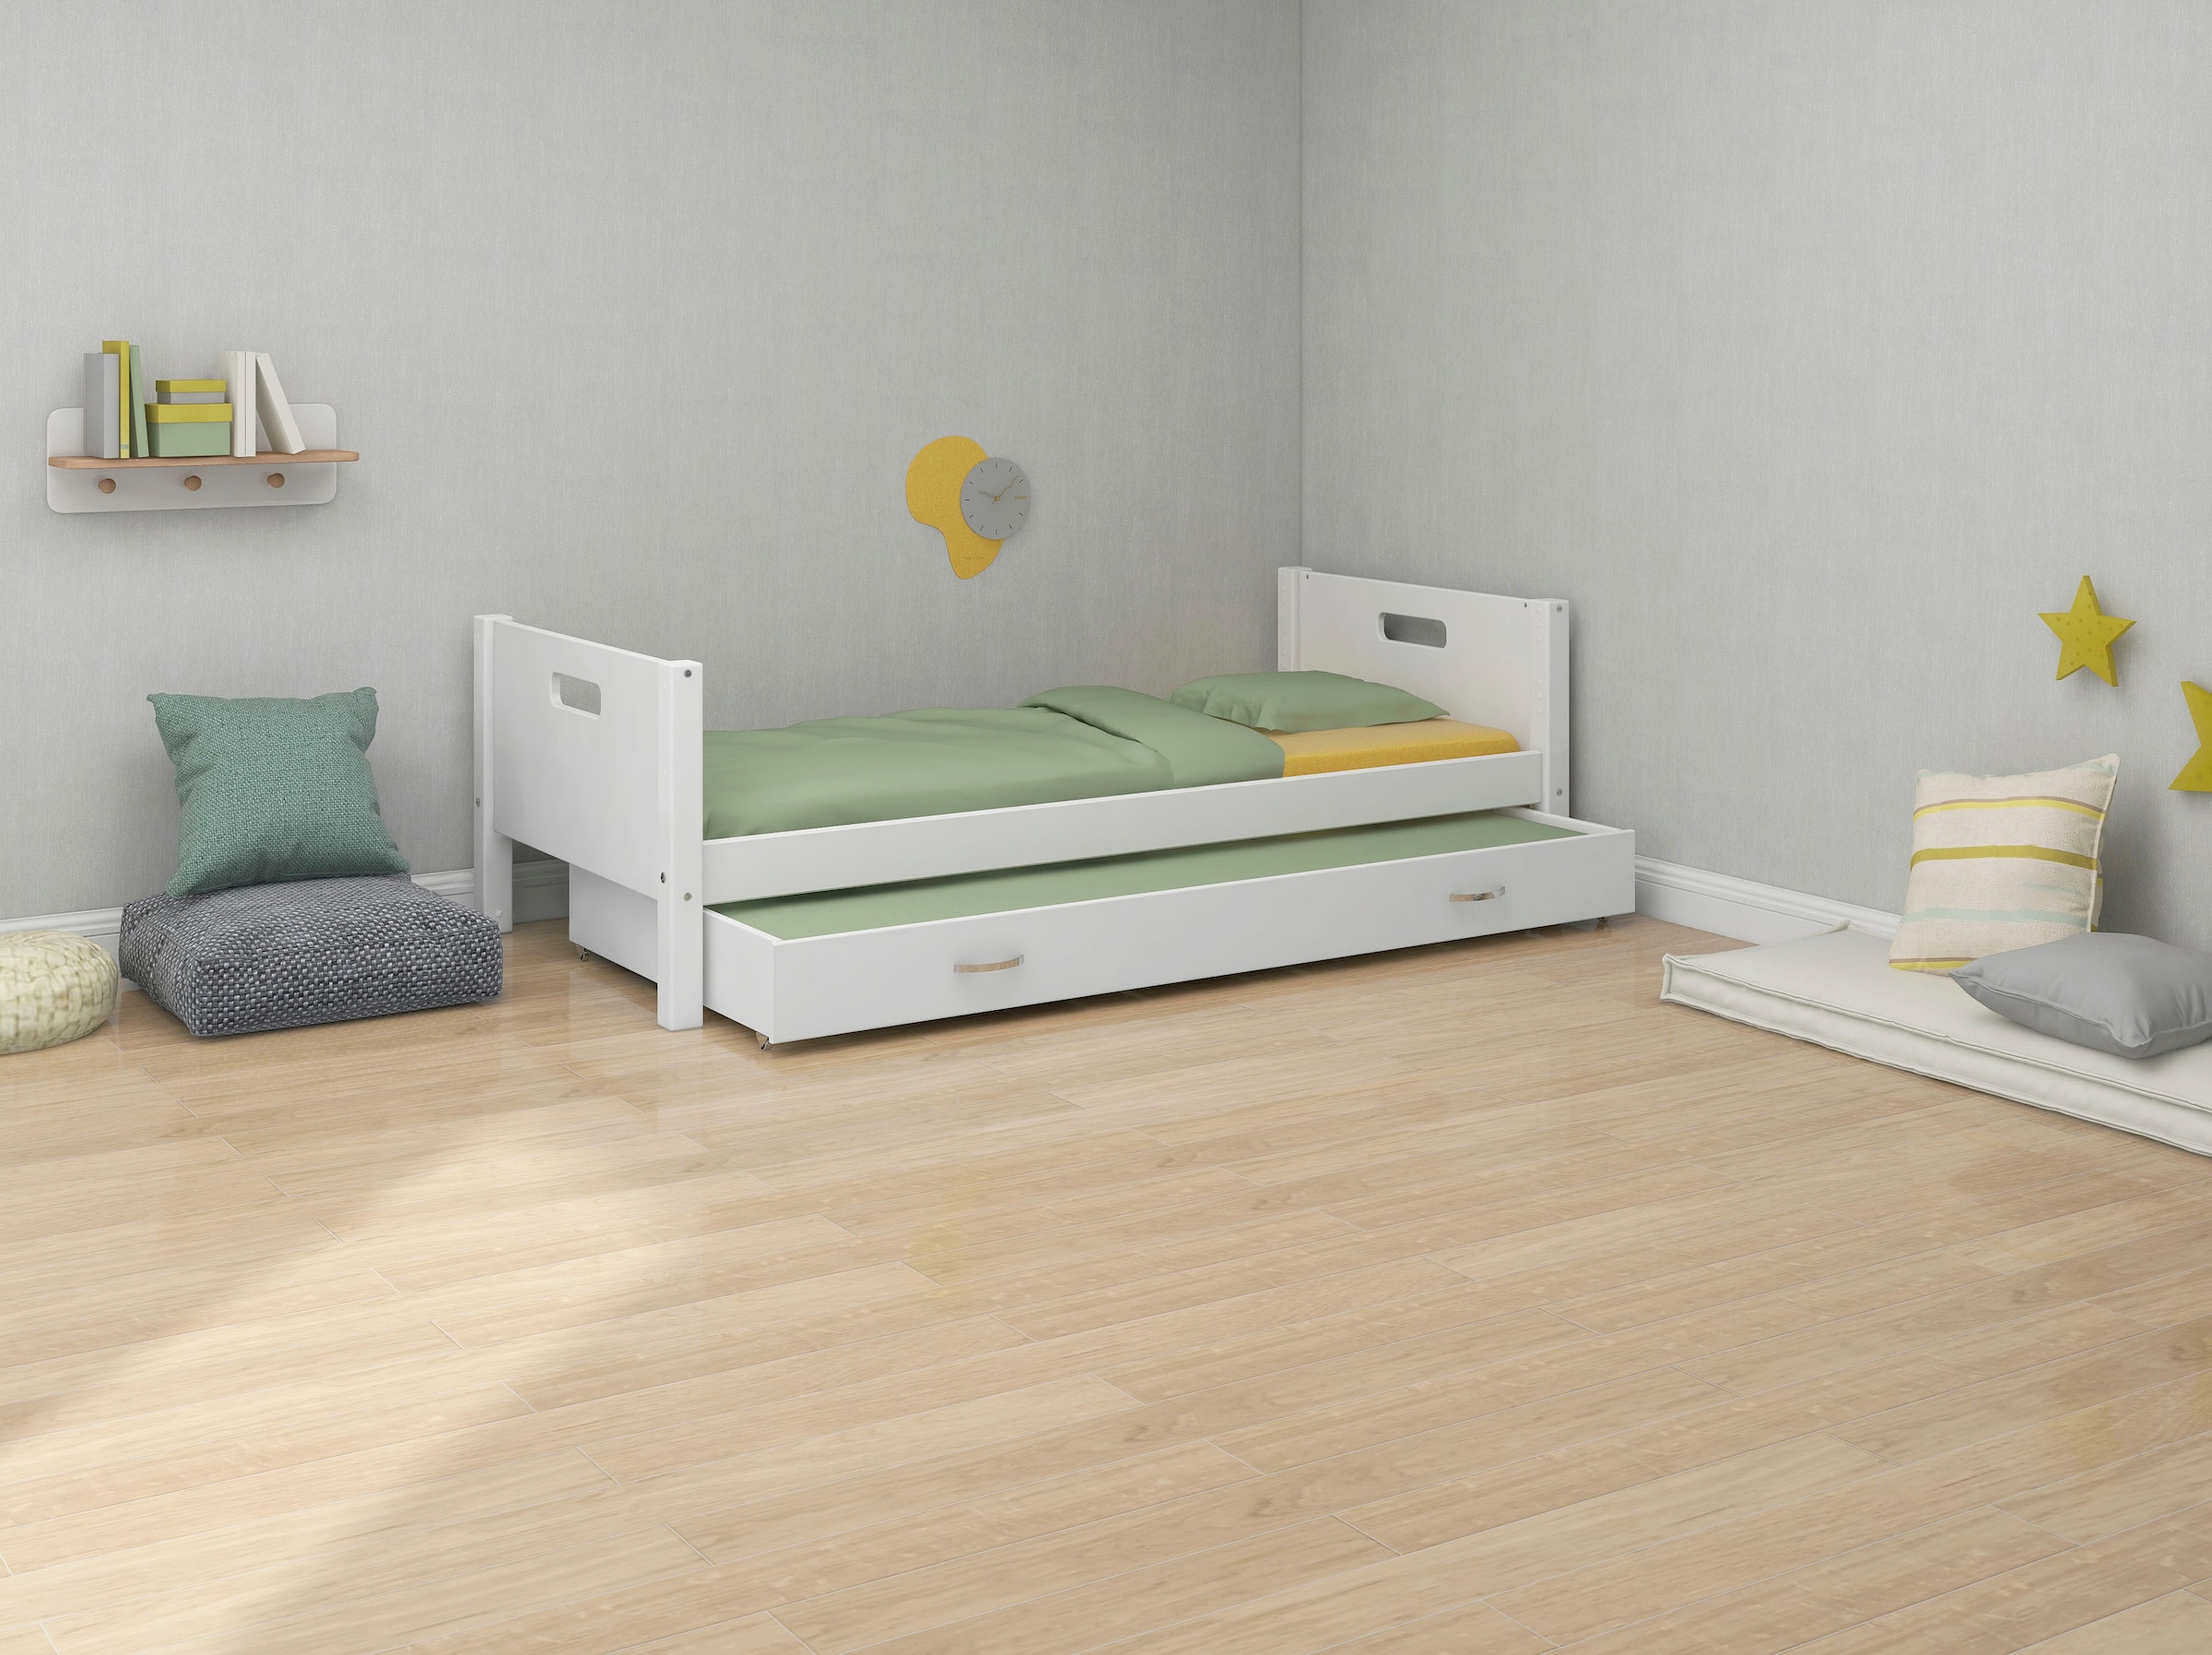 Thuka Einzelbett »Nordic Kinderbett, Spielbett, Daybett,«, bester Qualität, stabil, umbaubar, mit Ausziehbett